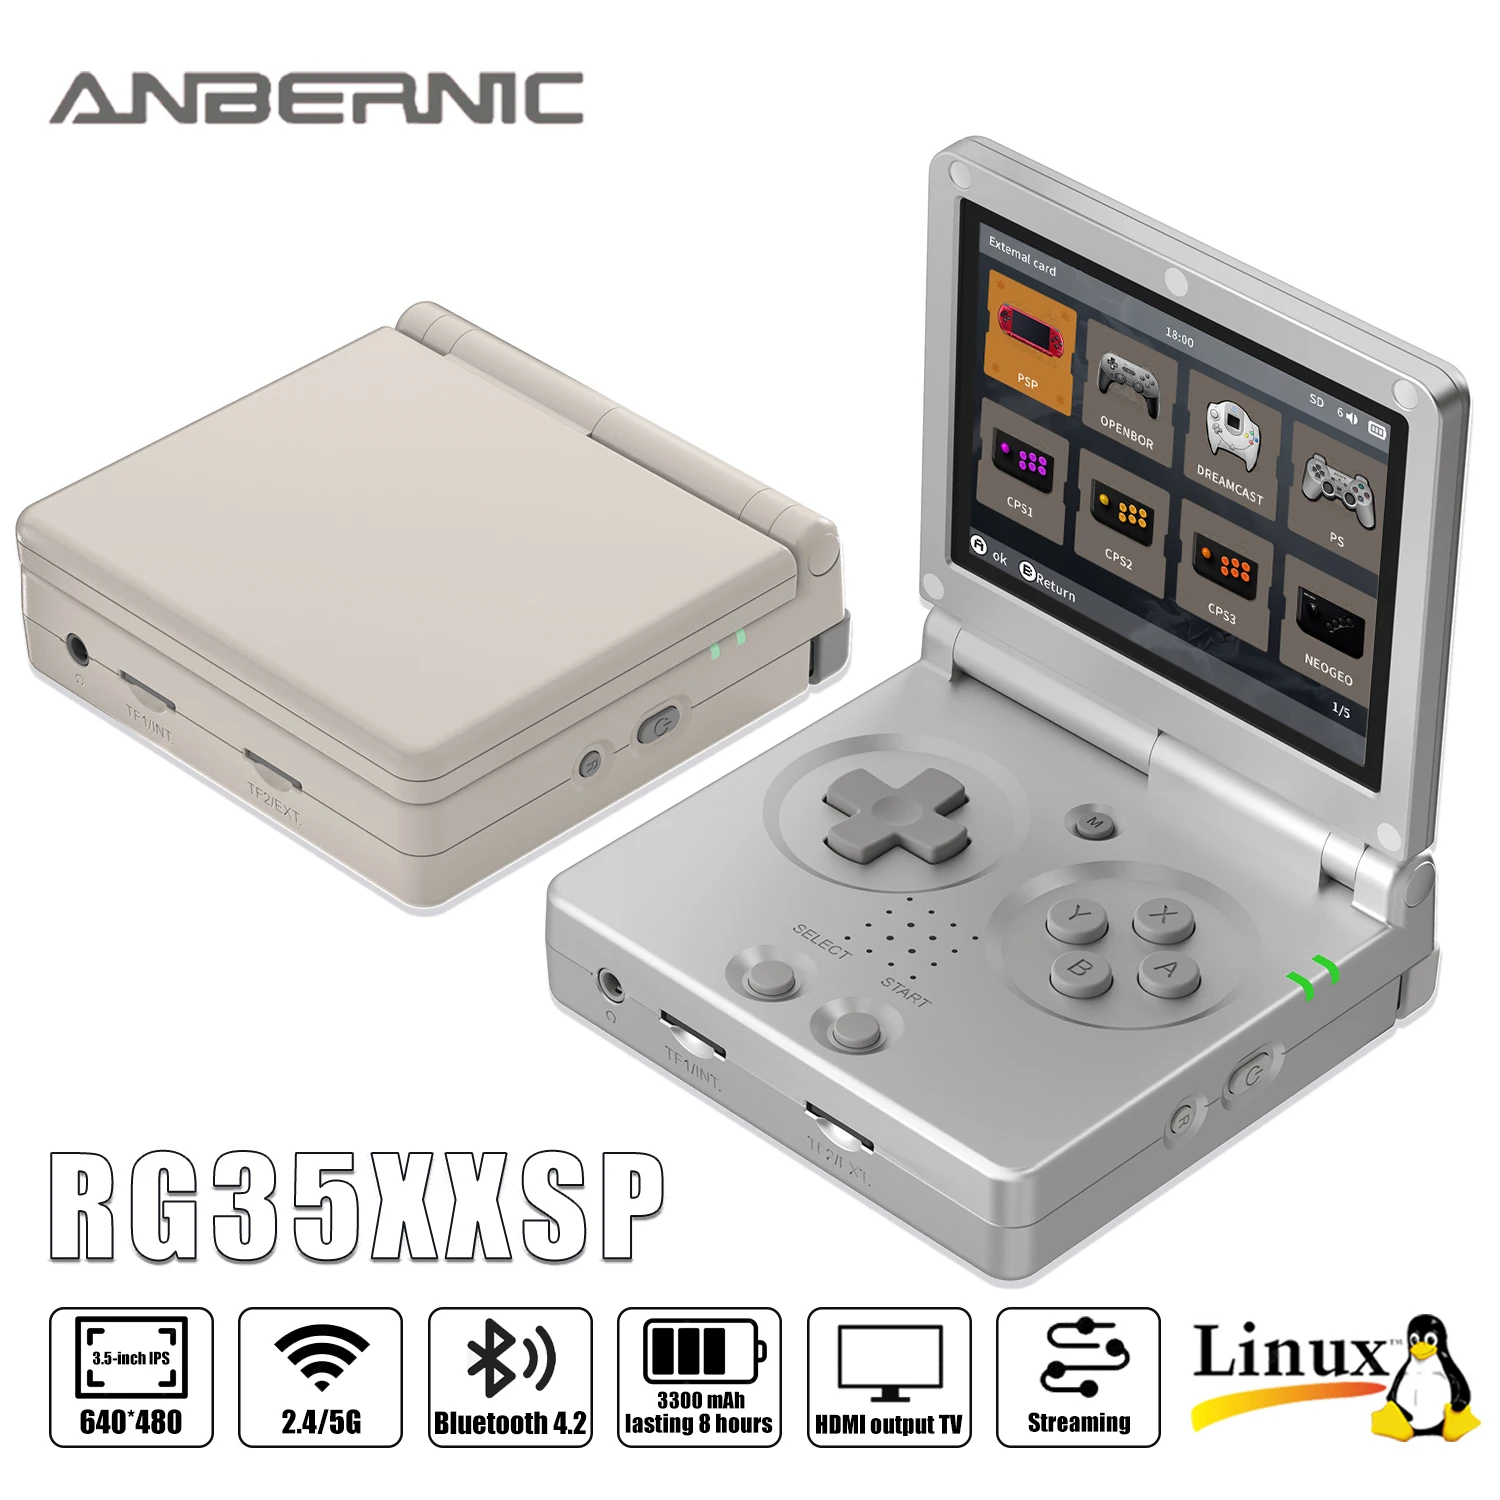 ANBERNIC 3.5 인치 IPS 스크린 플립 핸드 헬드 콘솔, 리눅스 시스템, HDMI 호환 TV 출력, 64G 5500 게임 사전 설치, RG35XXSP